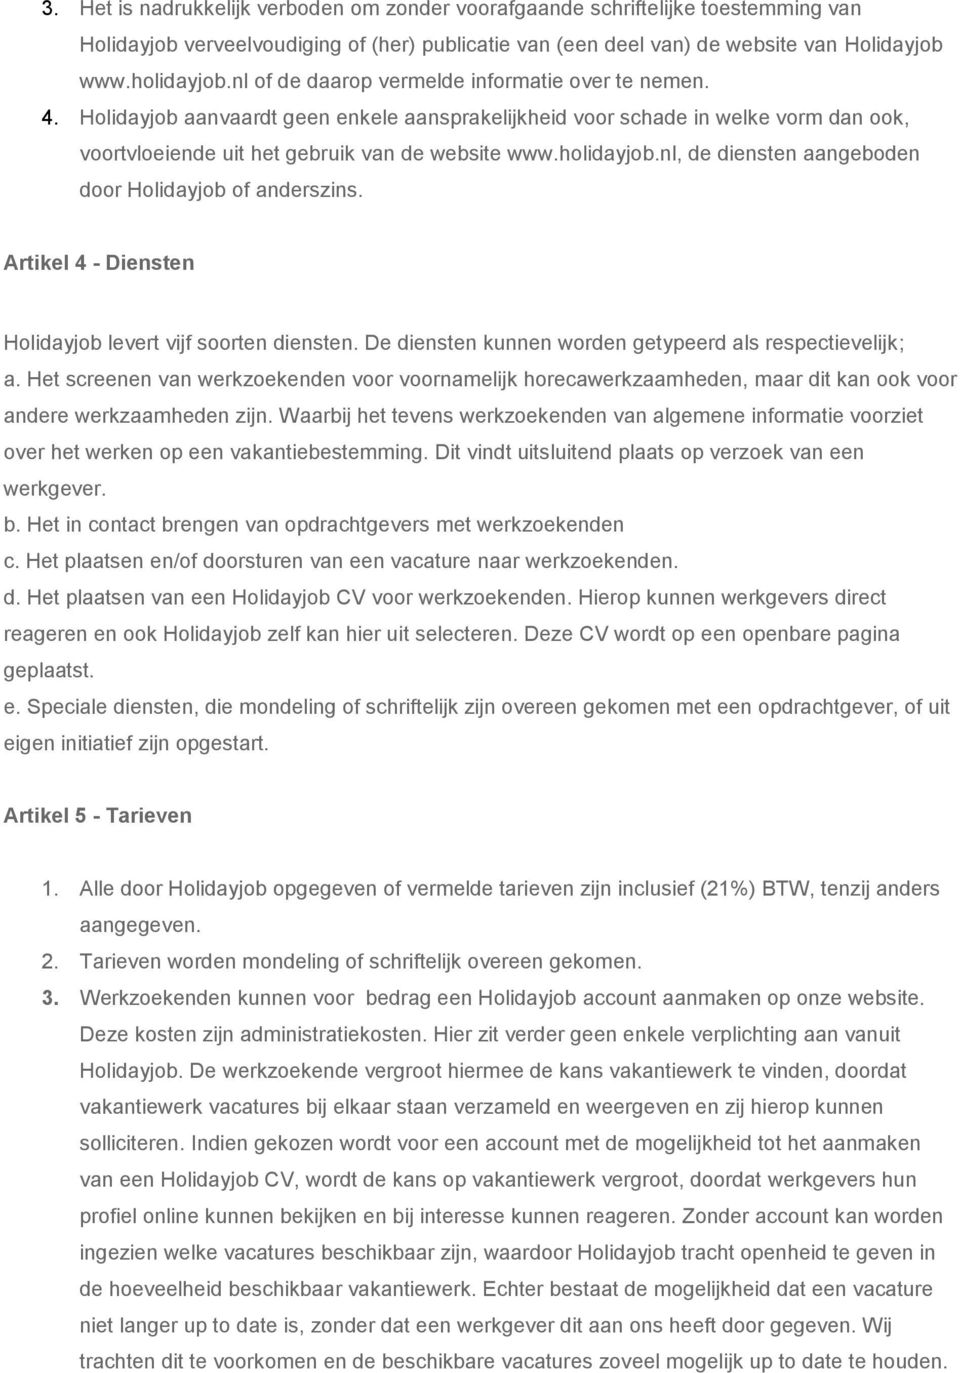 holidayjob.nl, de diensten aangeboden door Holidayjob of anderszins. Artikel 4 - Diensten Holidayjob levert vijf soorten diensten. De diensten kunnen worden getypeerd als respectievelijk; a.